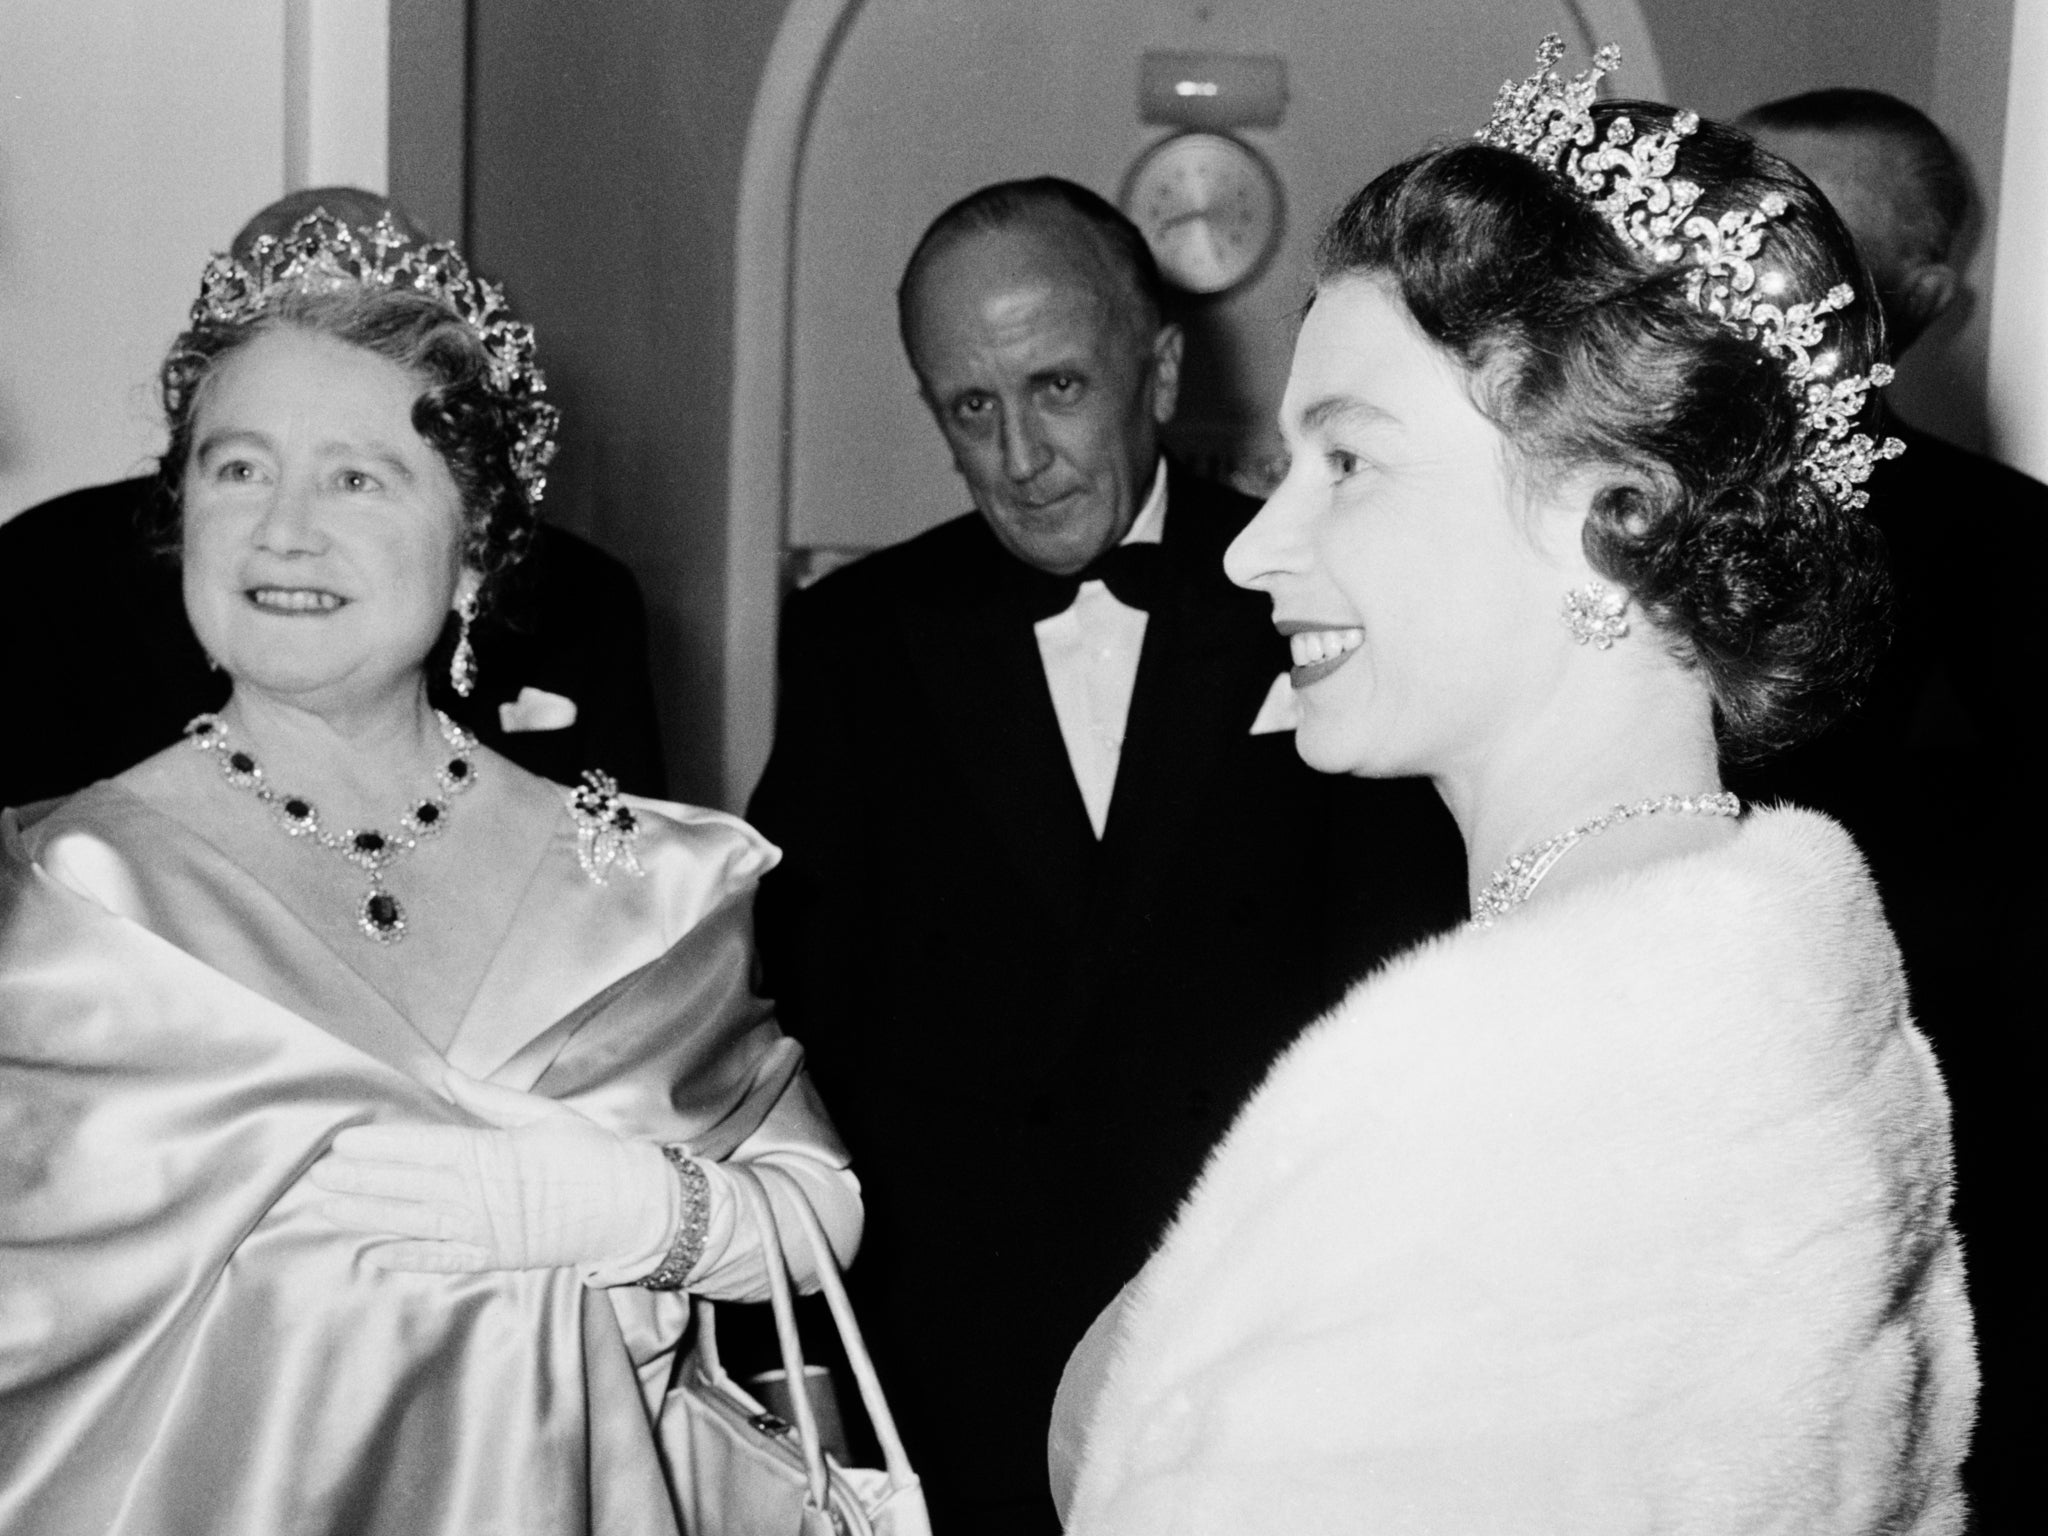 The Queen Mother and Queen Elizabeth II in London, November 1964